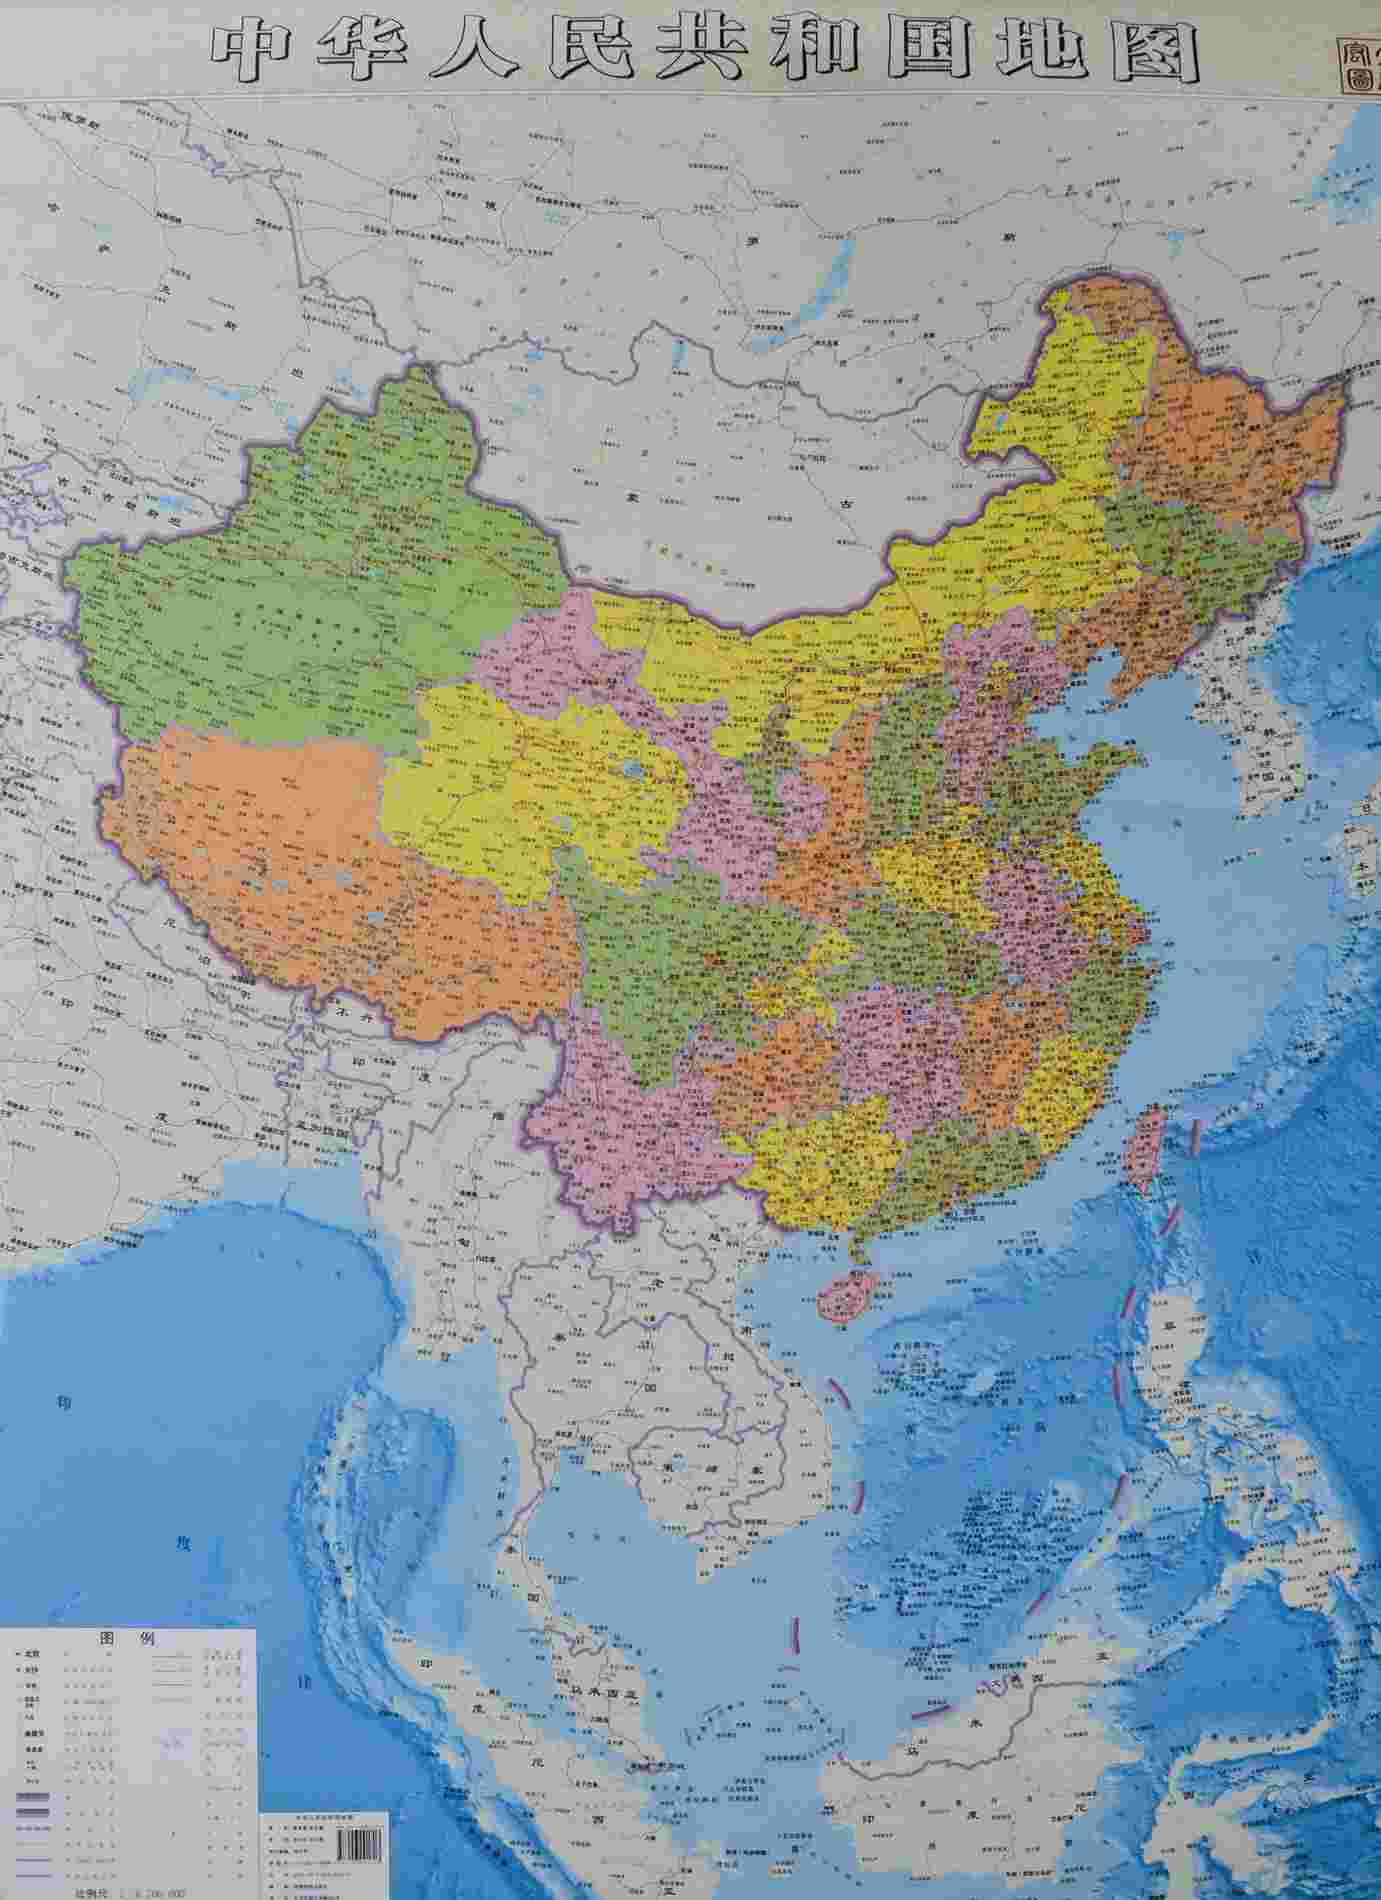 中国地图分省设色地图竖版高清矢量cdr、pdf格式2020年